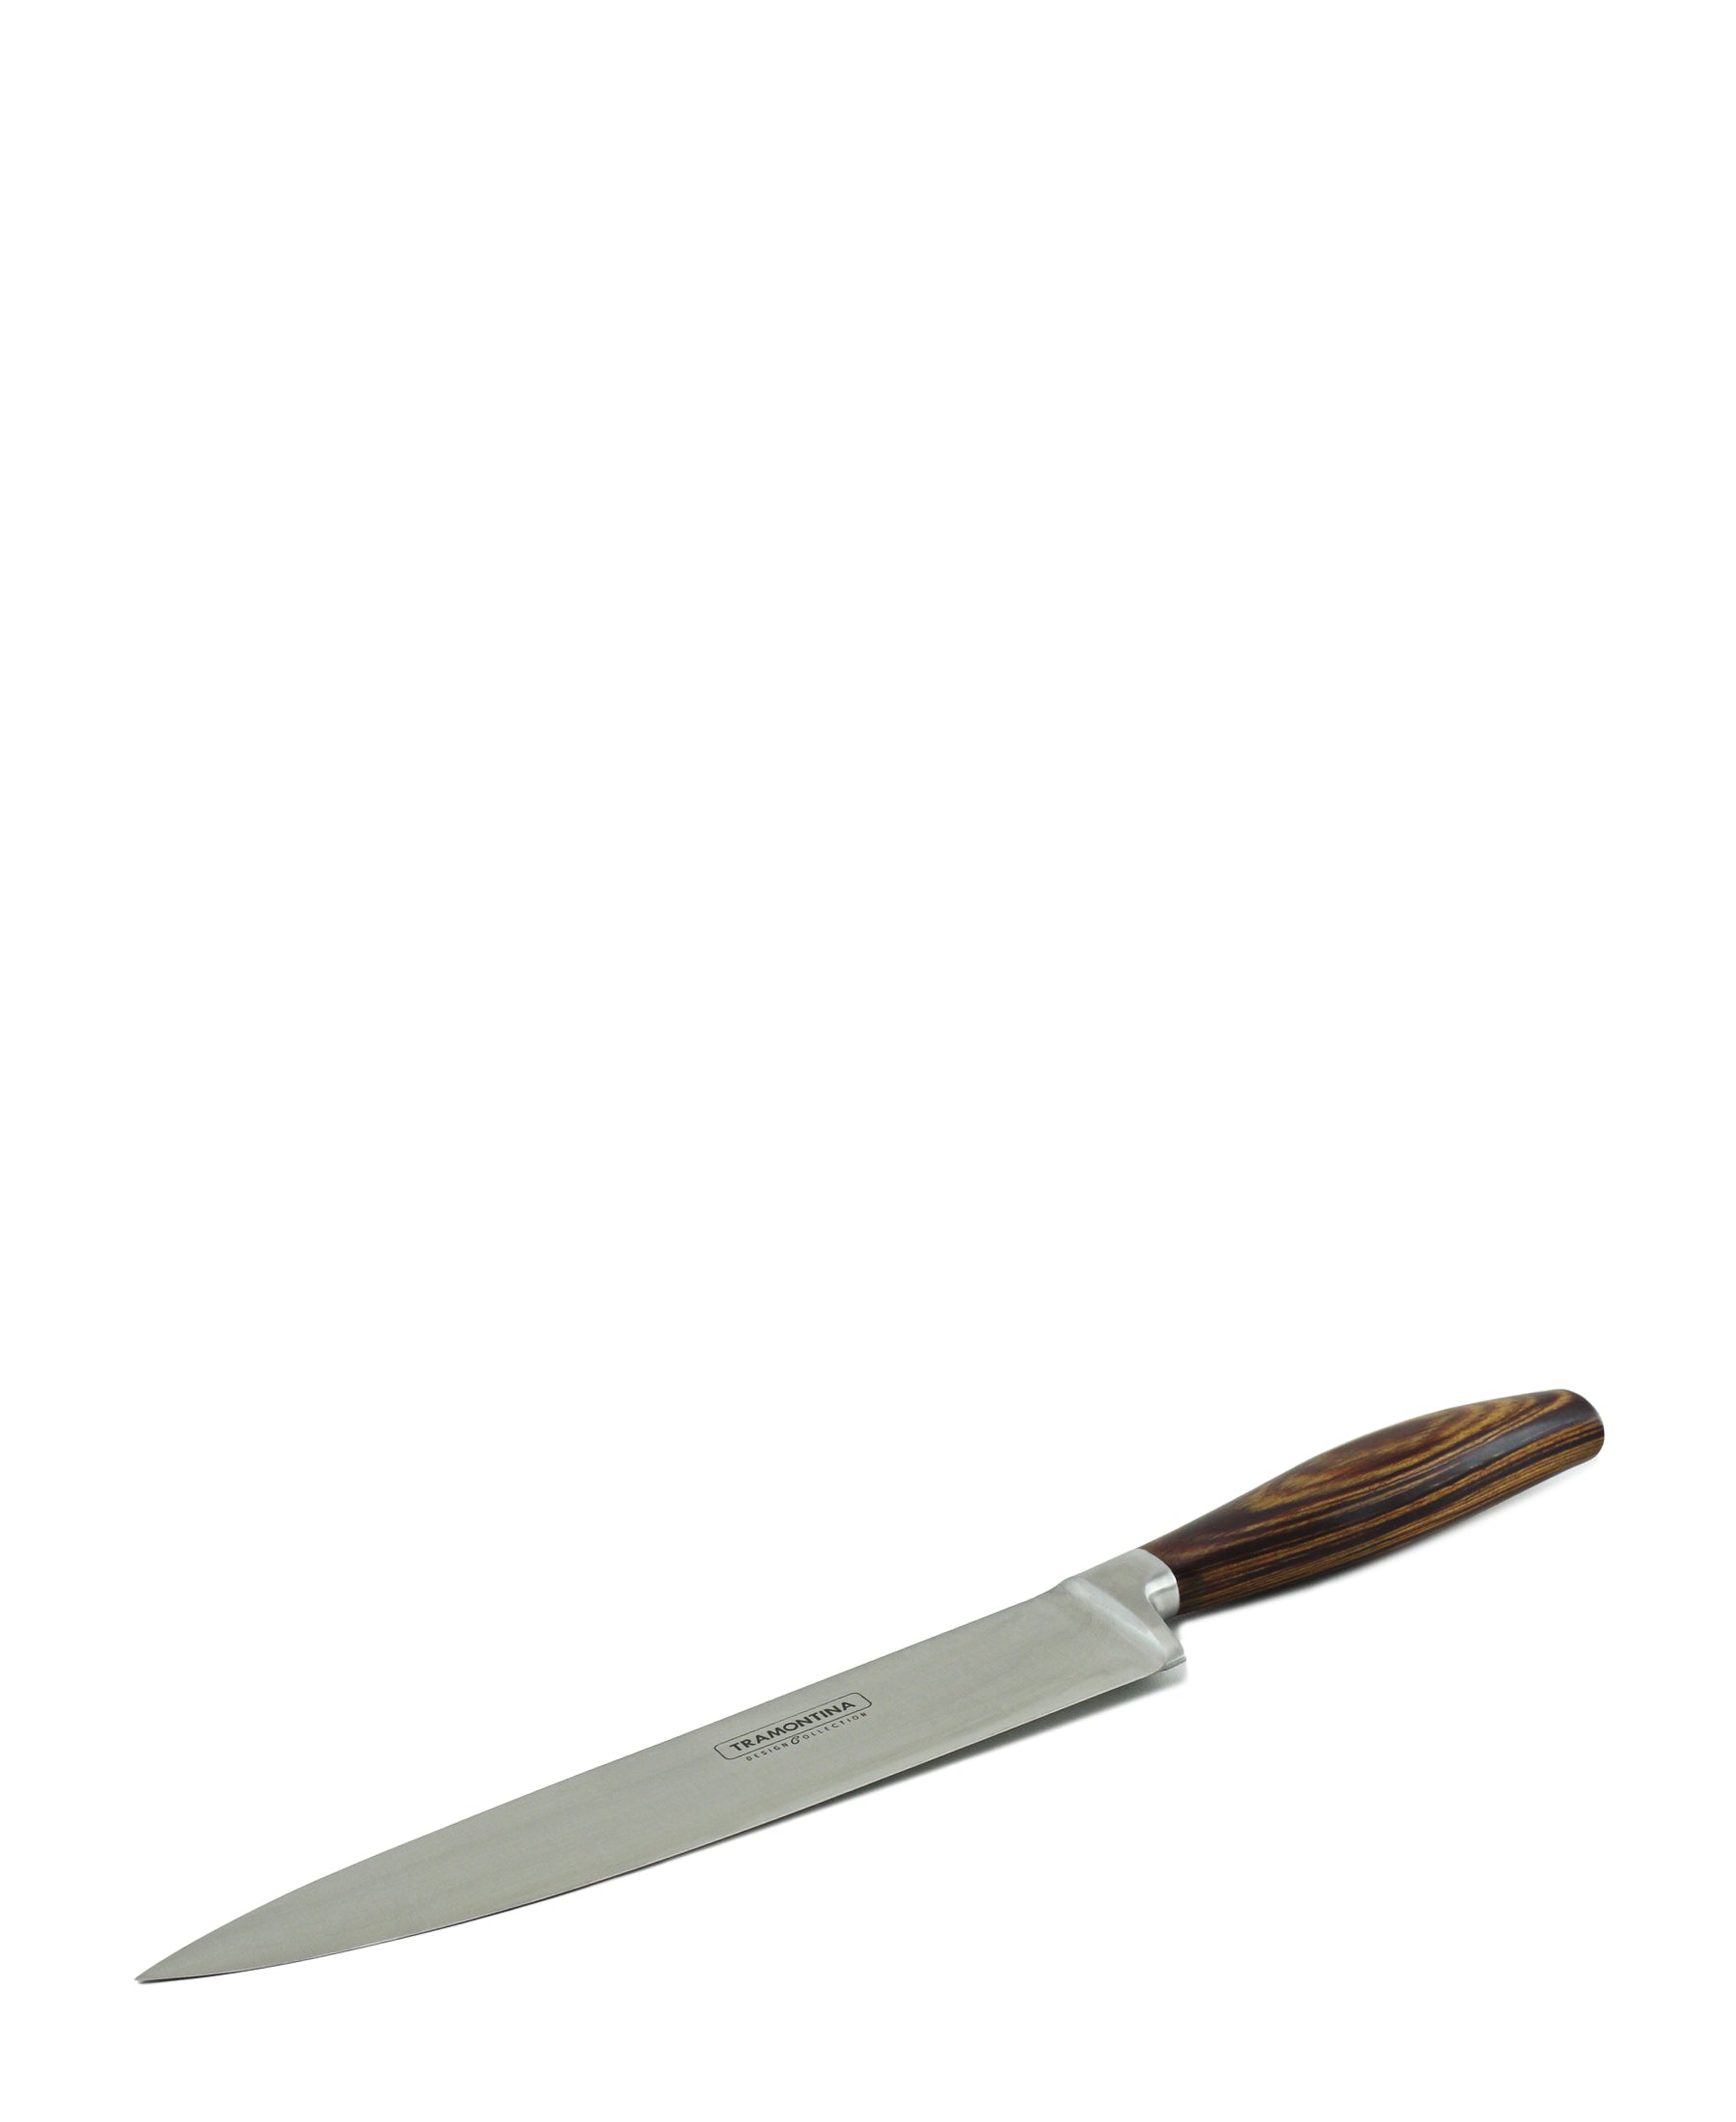 Tramontina Knife Set 7 Piece - Brown